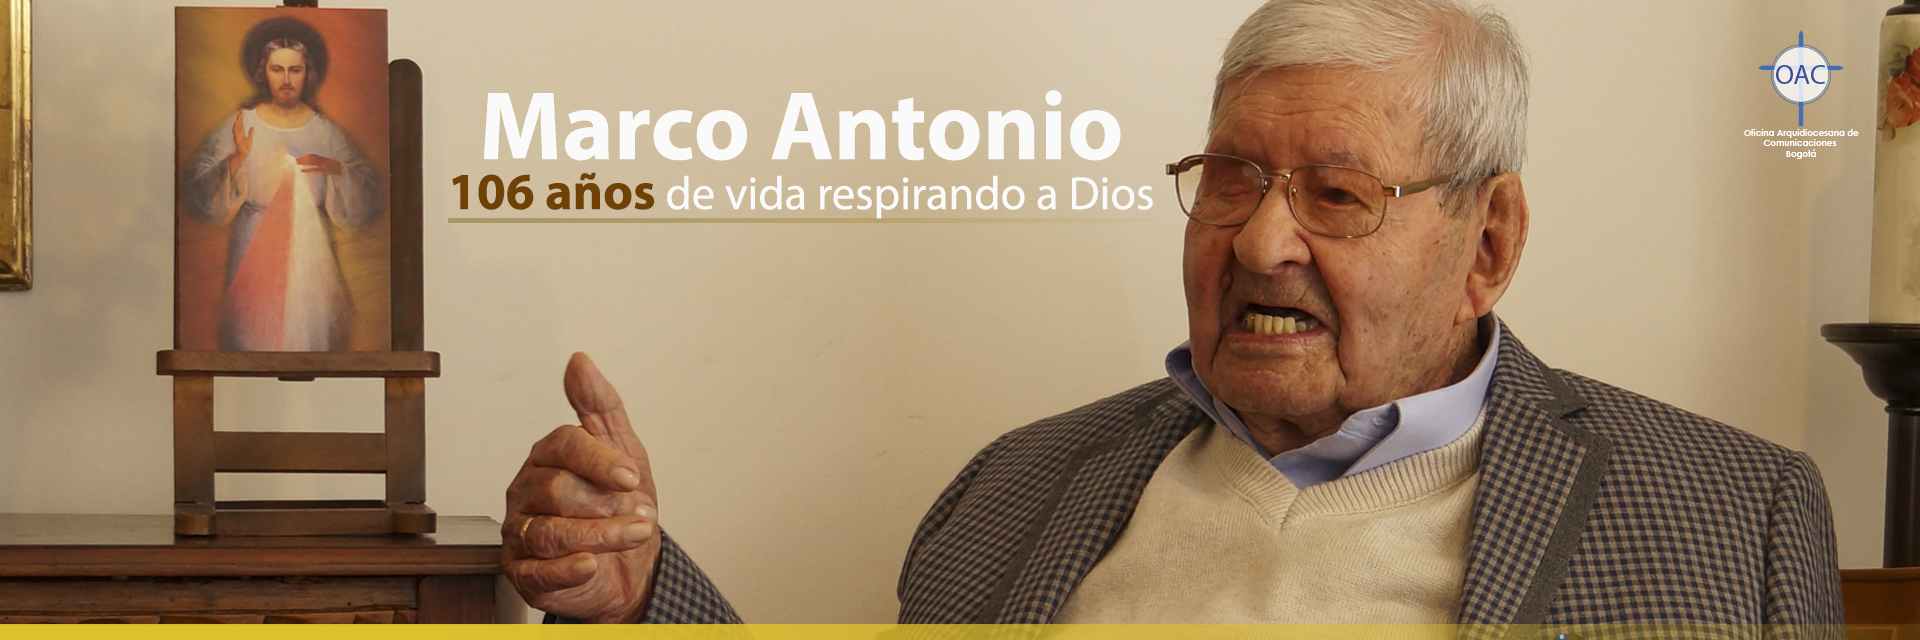 Marco Antonio, 106 años de vida respirando a Dios